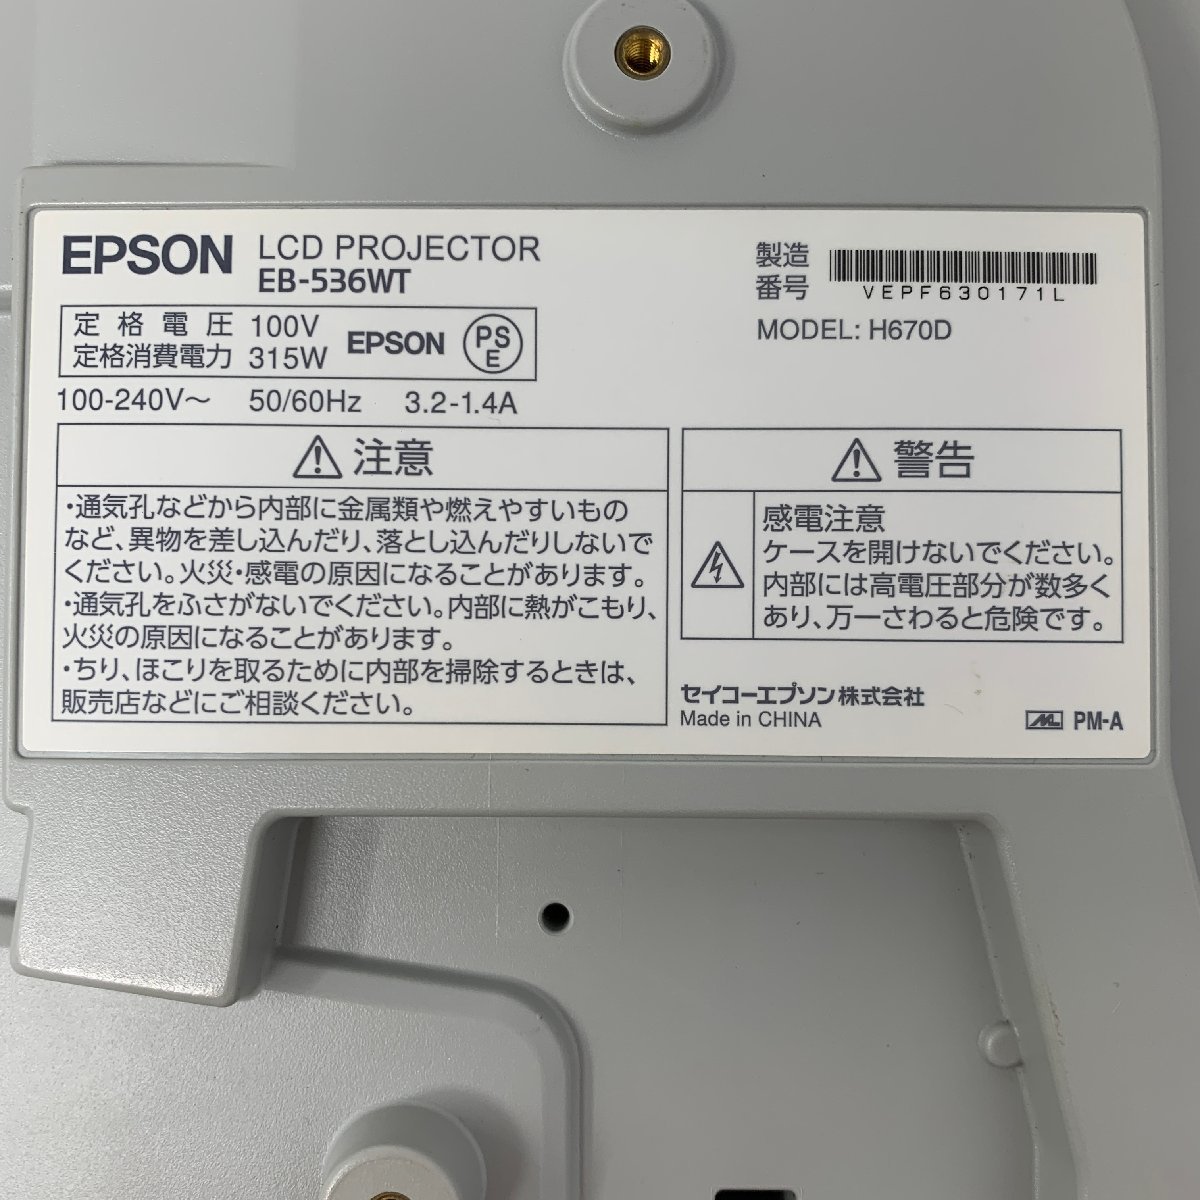 【レンズカバー欠品】7日保証・平日発送 ランプ 404時間 EB-536WT H670D EPSON エプソン プロジェクター 3400lm WXGA HDMI 3LCD_画像7